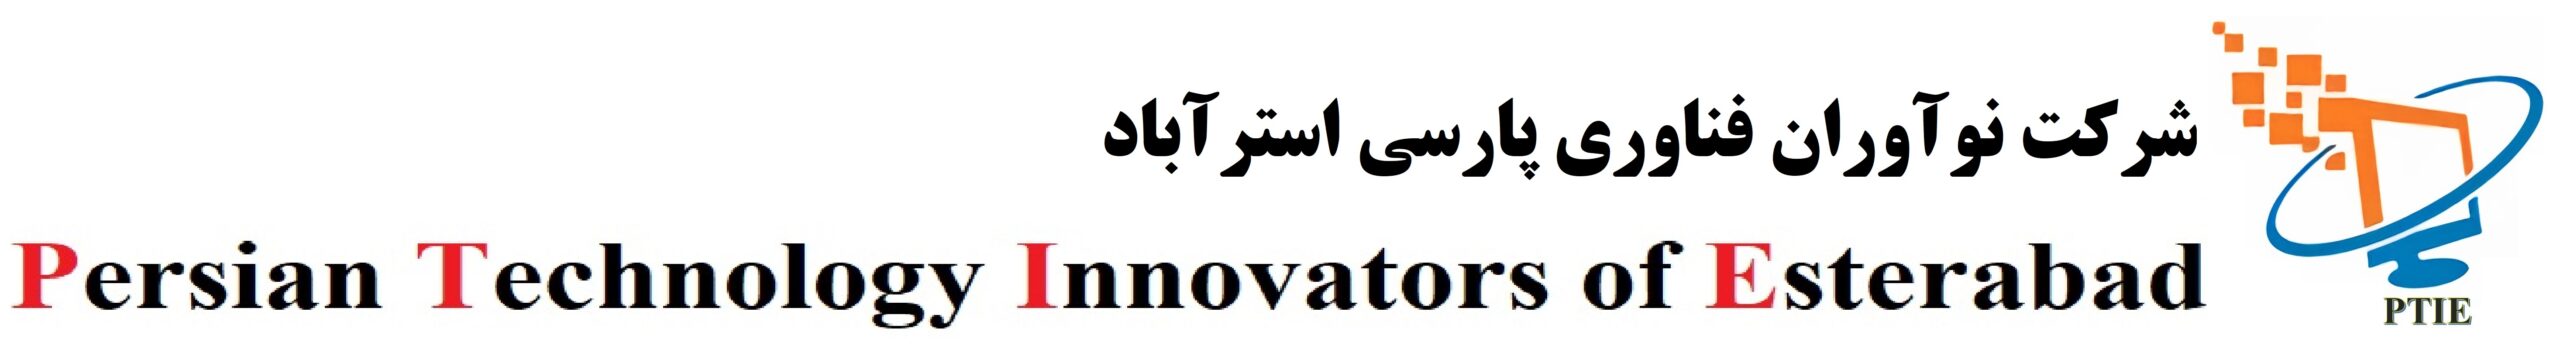 شرکت نوآوران فناوری پارسی استراباد (Persian Technology Innovators of Estrabad) - PTIE